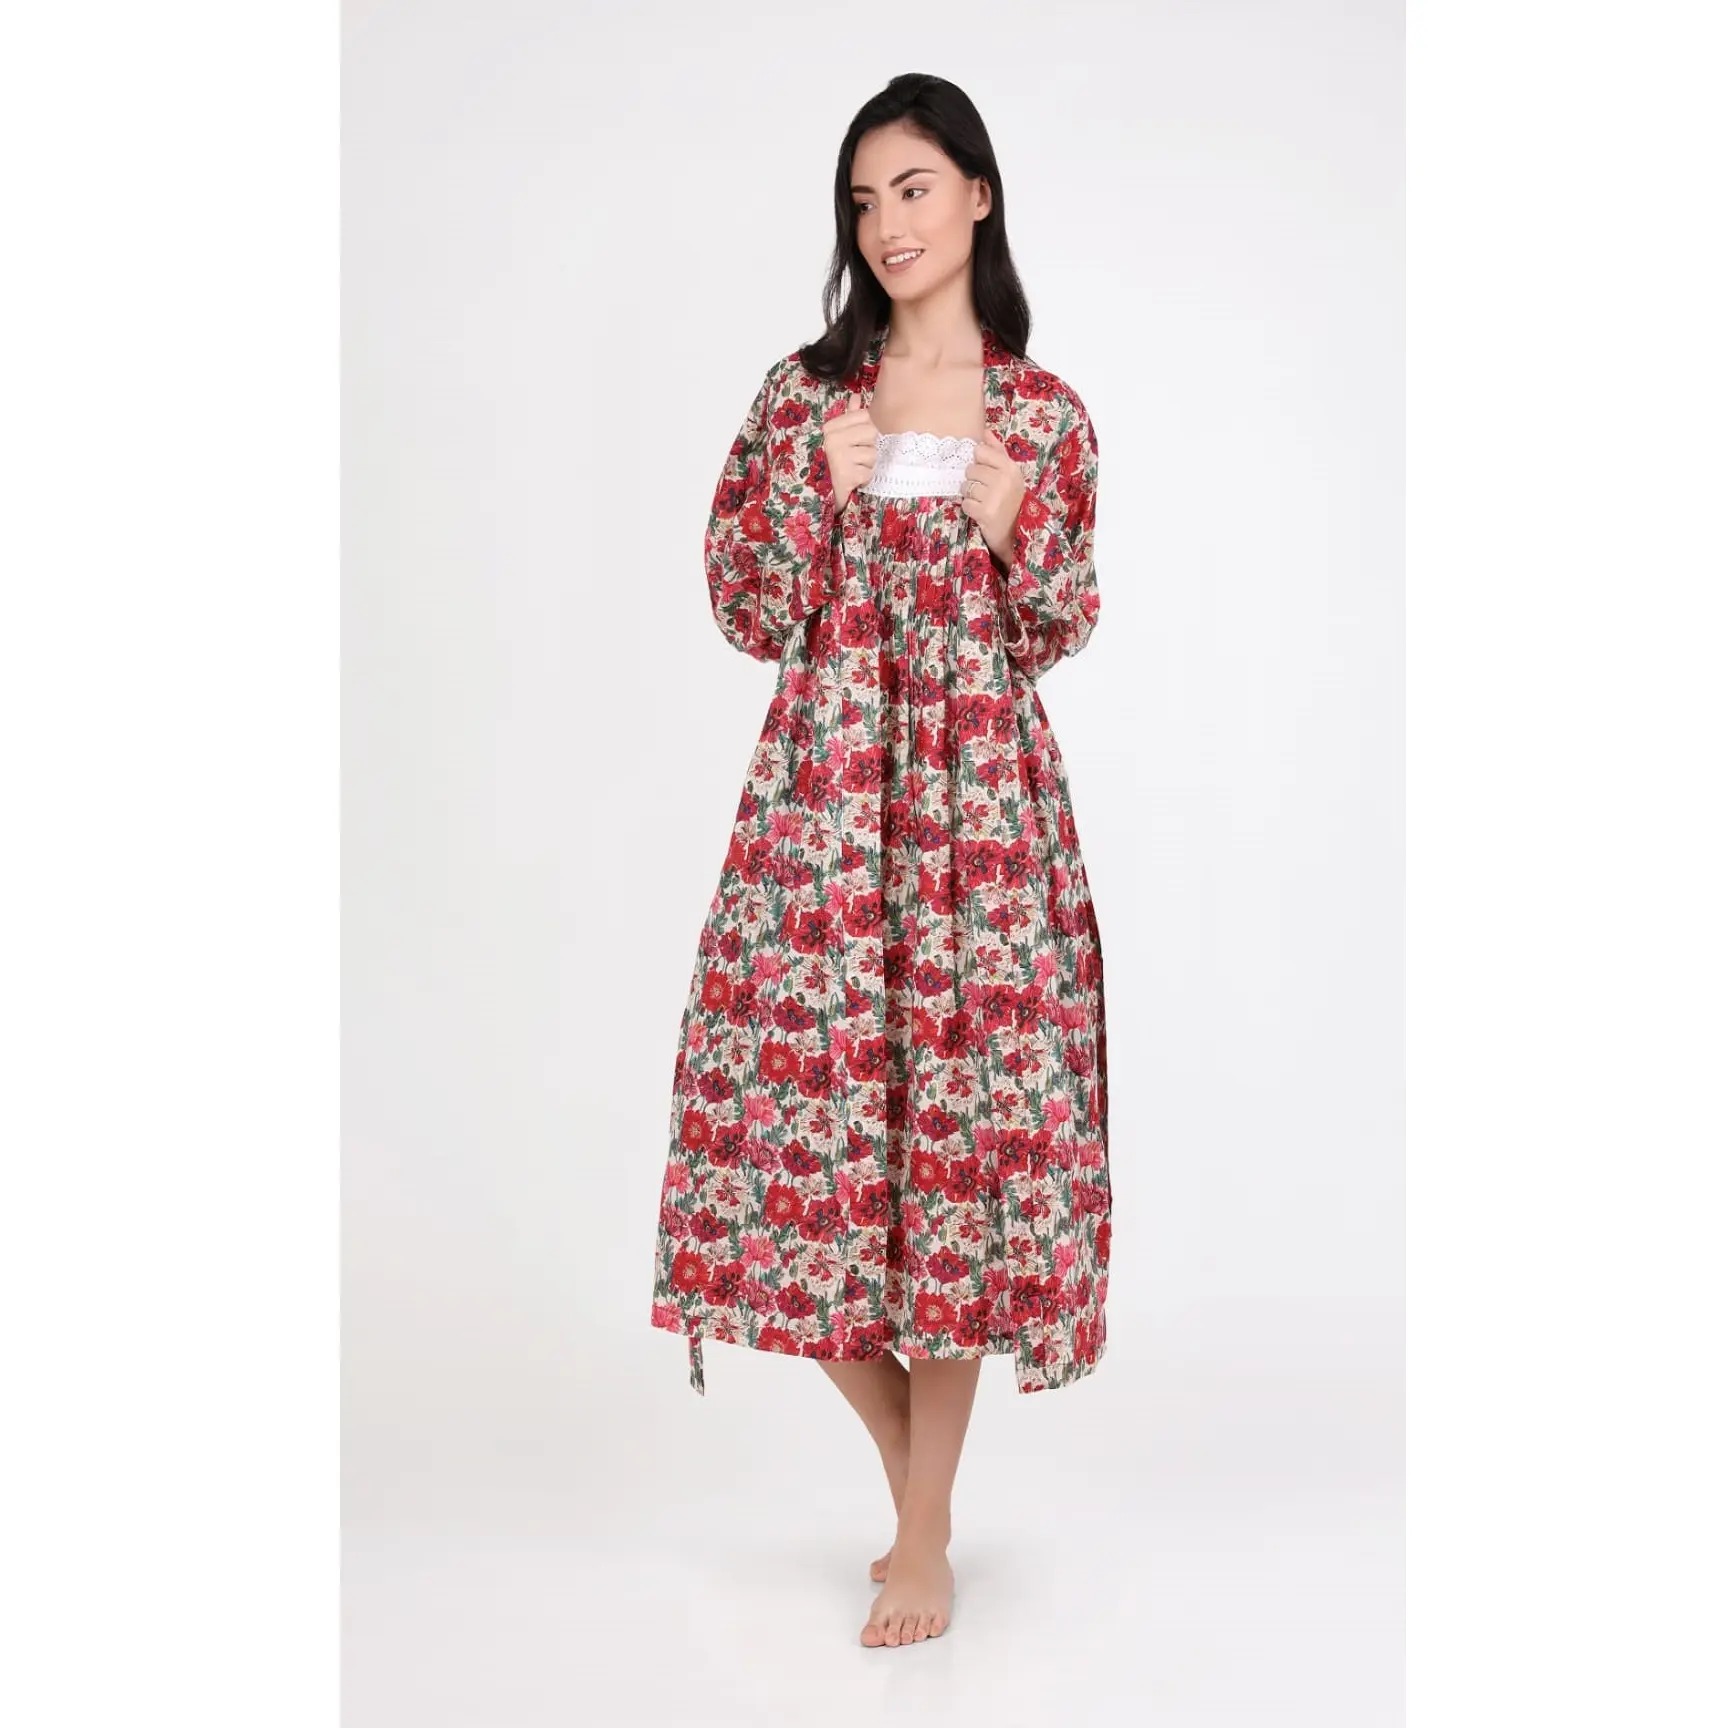 Robe de nuit avec imprimé Floral attrayant pour femmes, prix incroyable, longueur aux genoux, tenue de nuit pour dames